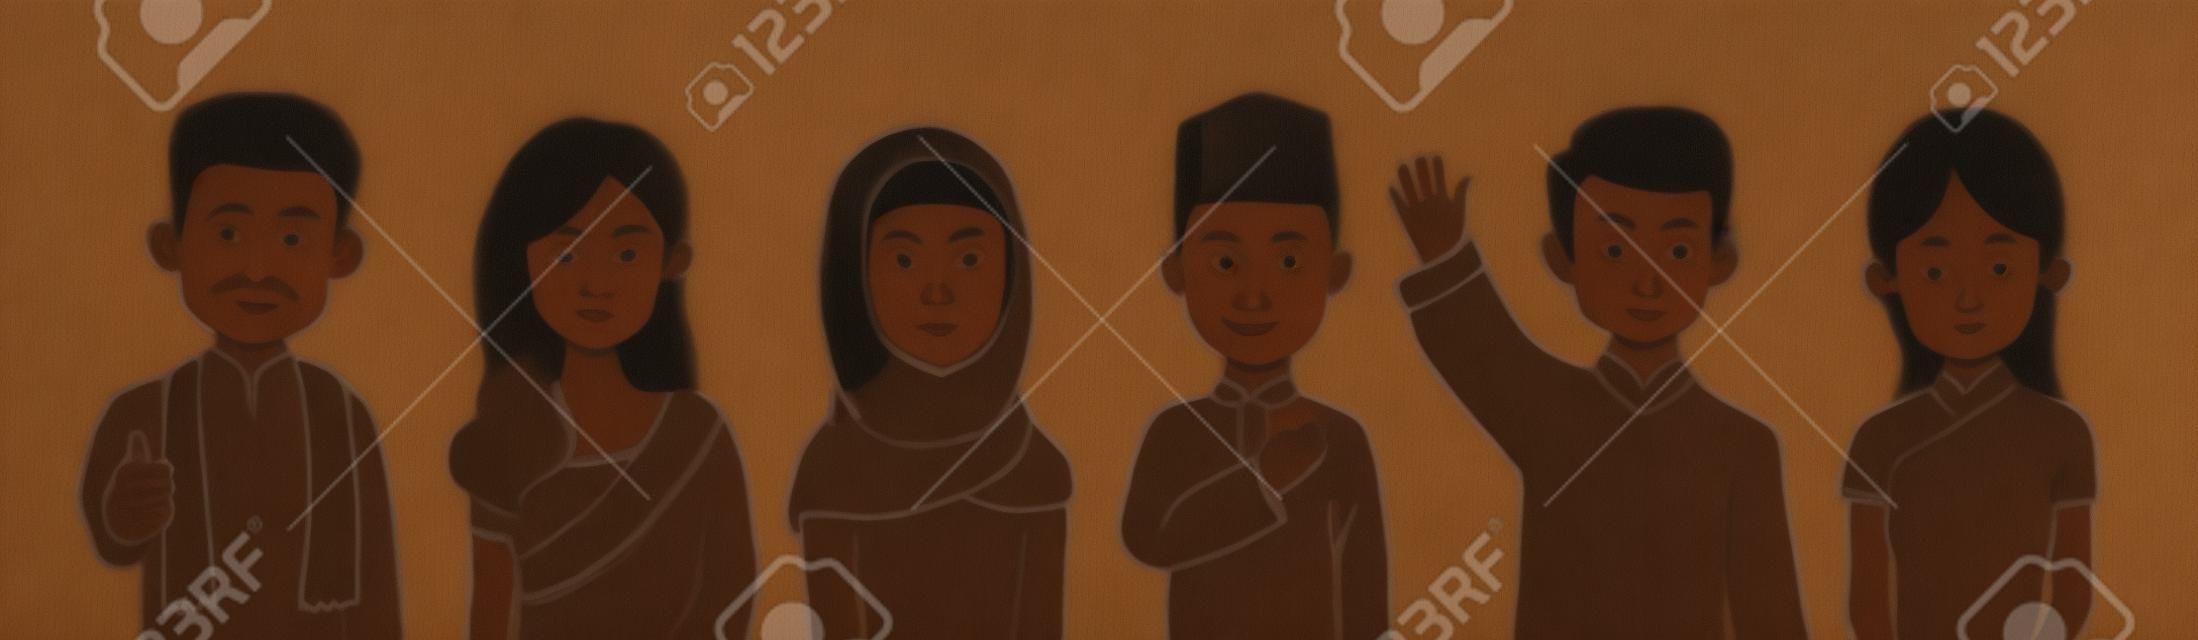 말레이시아의 혼혈 남성과 여성의 초상화